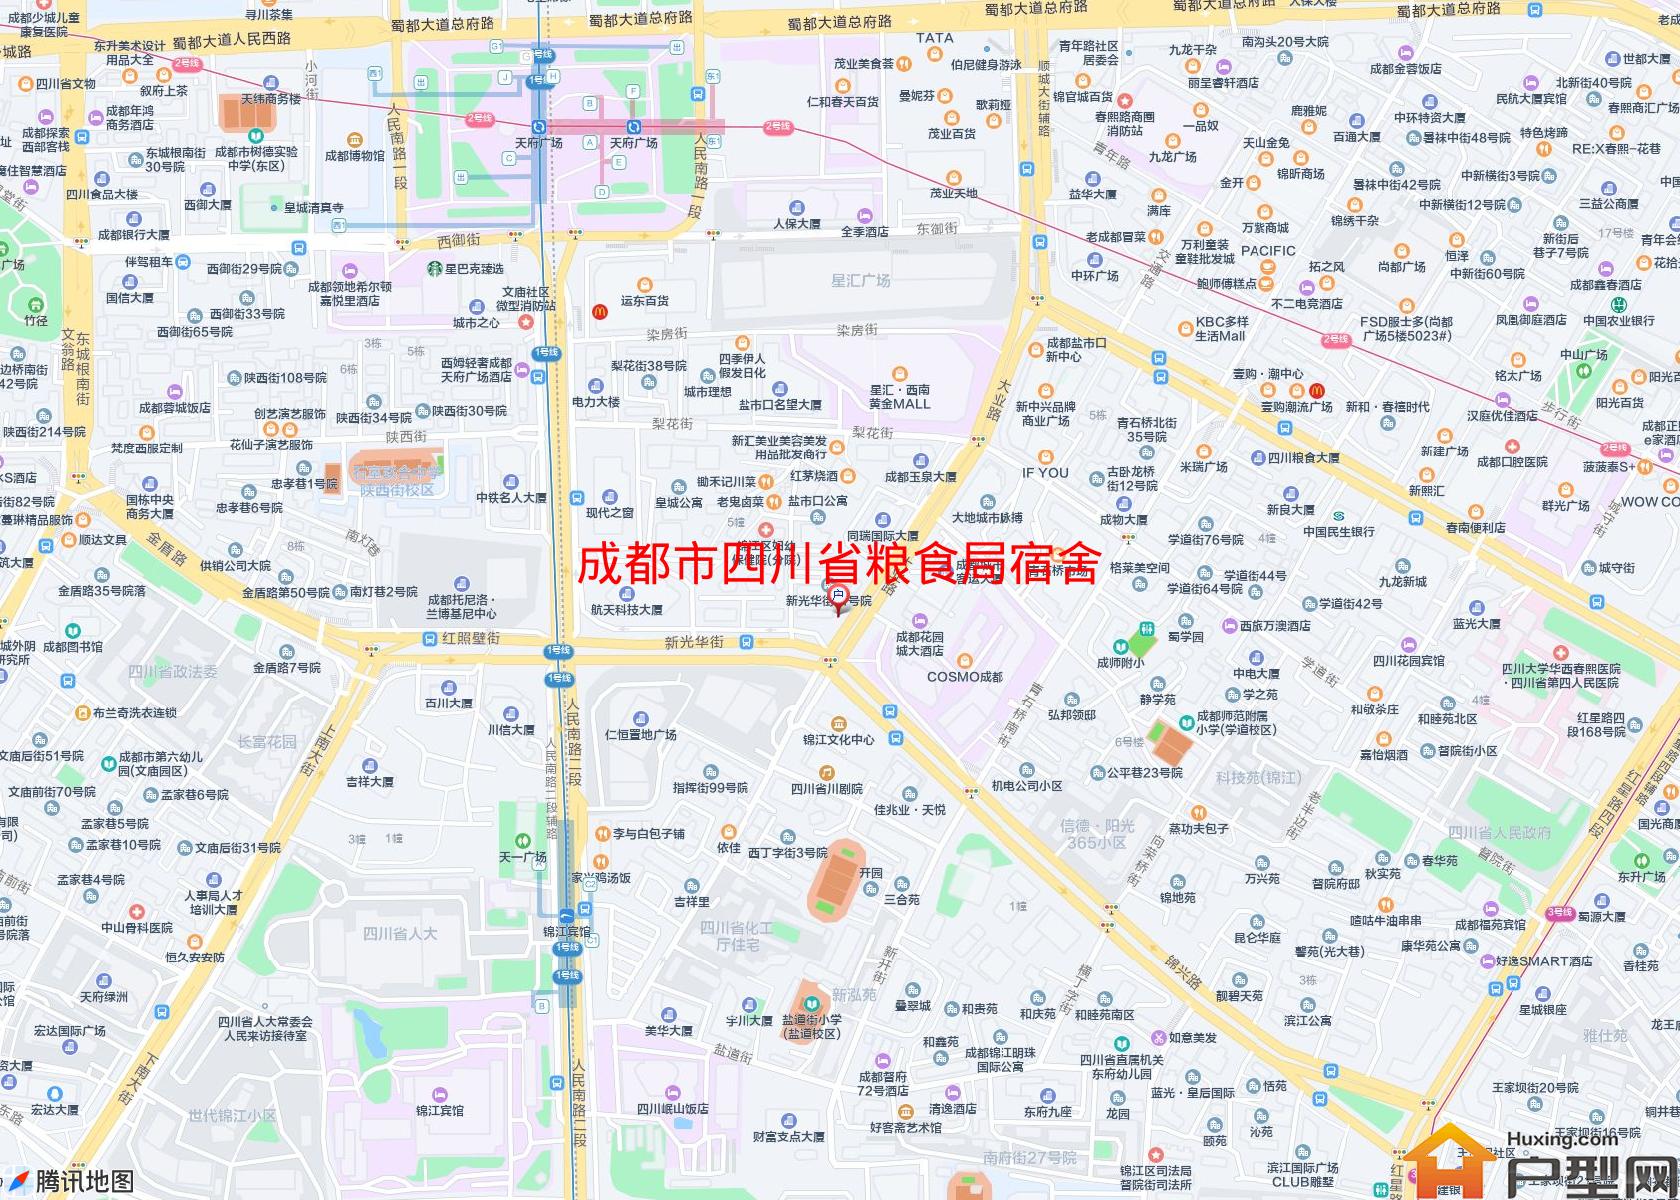 四川省粮食局宿舍小区 - 户型网